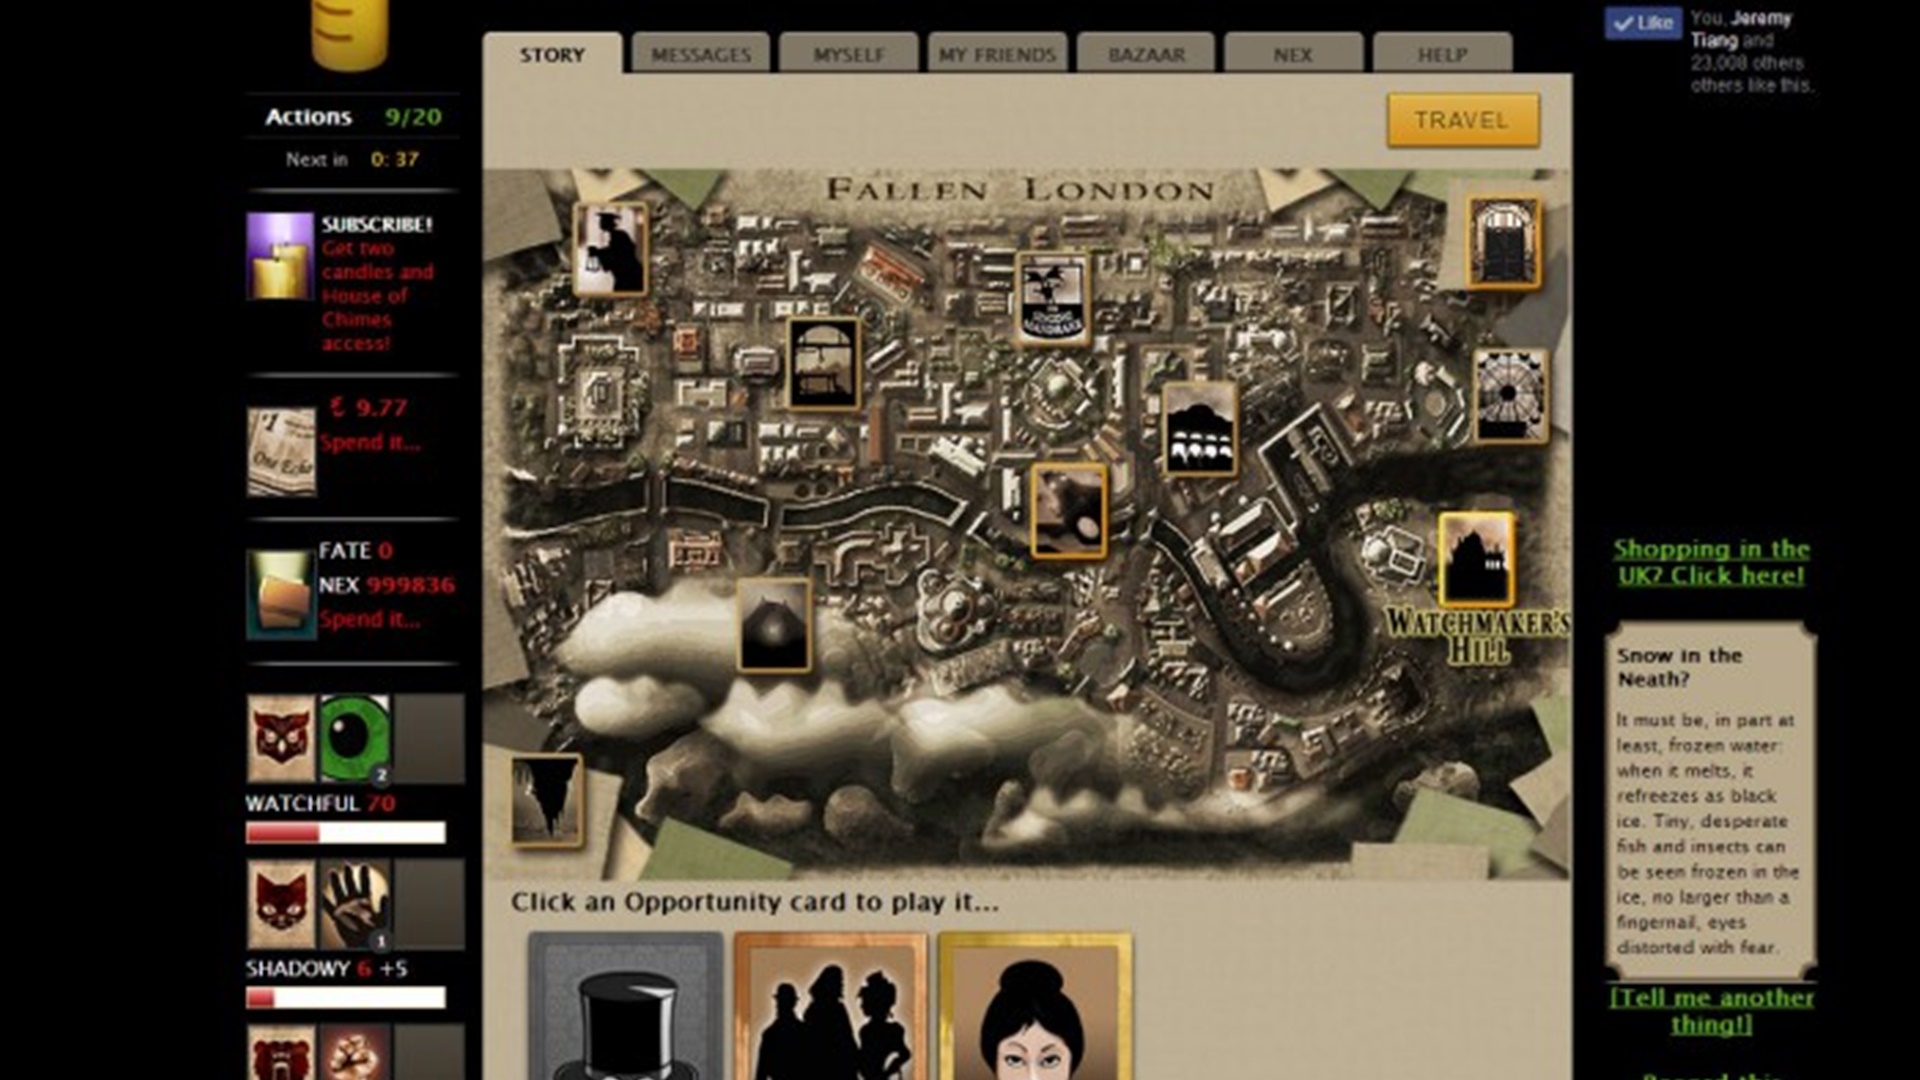 Online játékok: Fallen London. A kép egy London térképét mutatja, amelynek különféle lehetőségei állnak rendelkezésre a képernyő körüli lejátszó számára